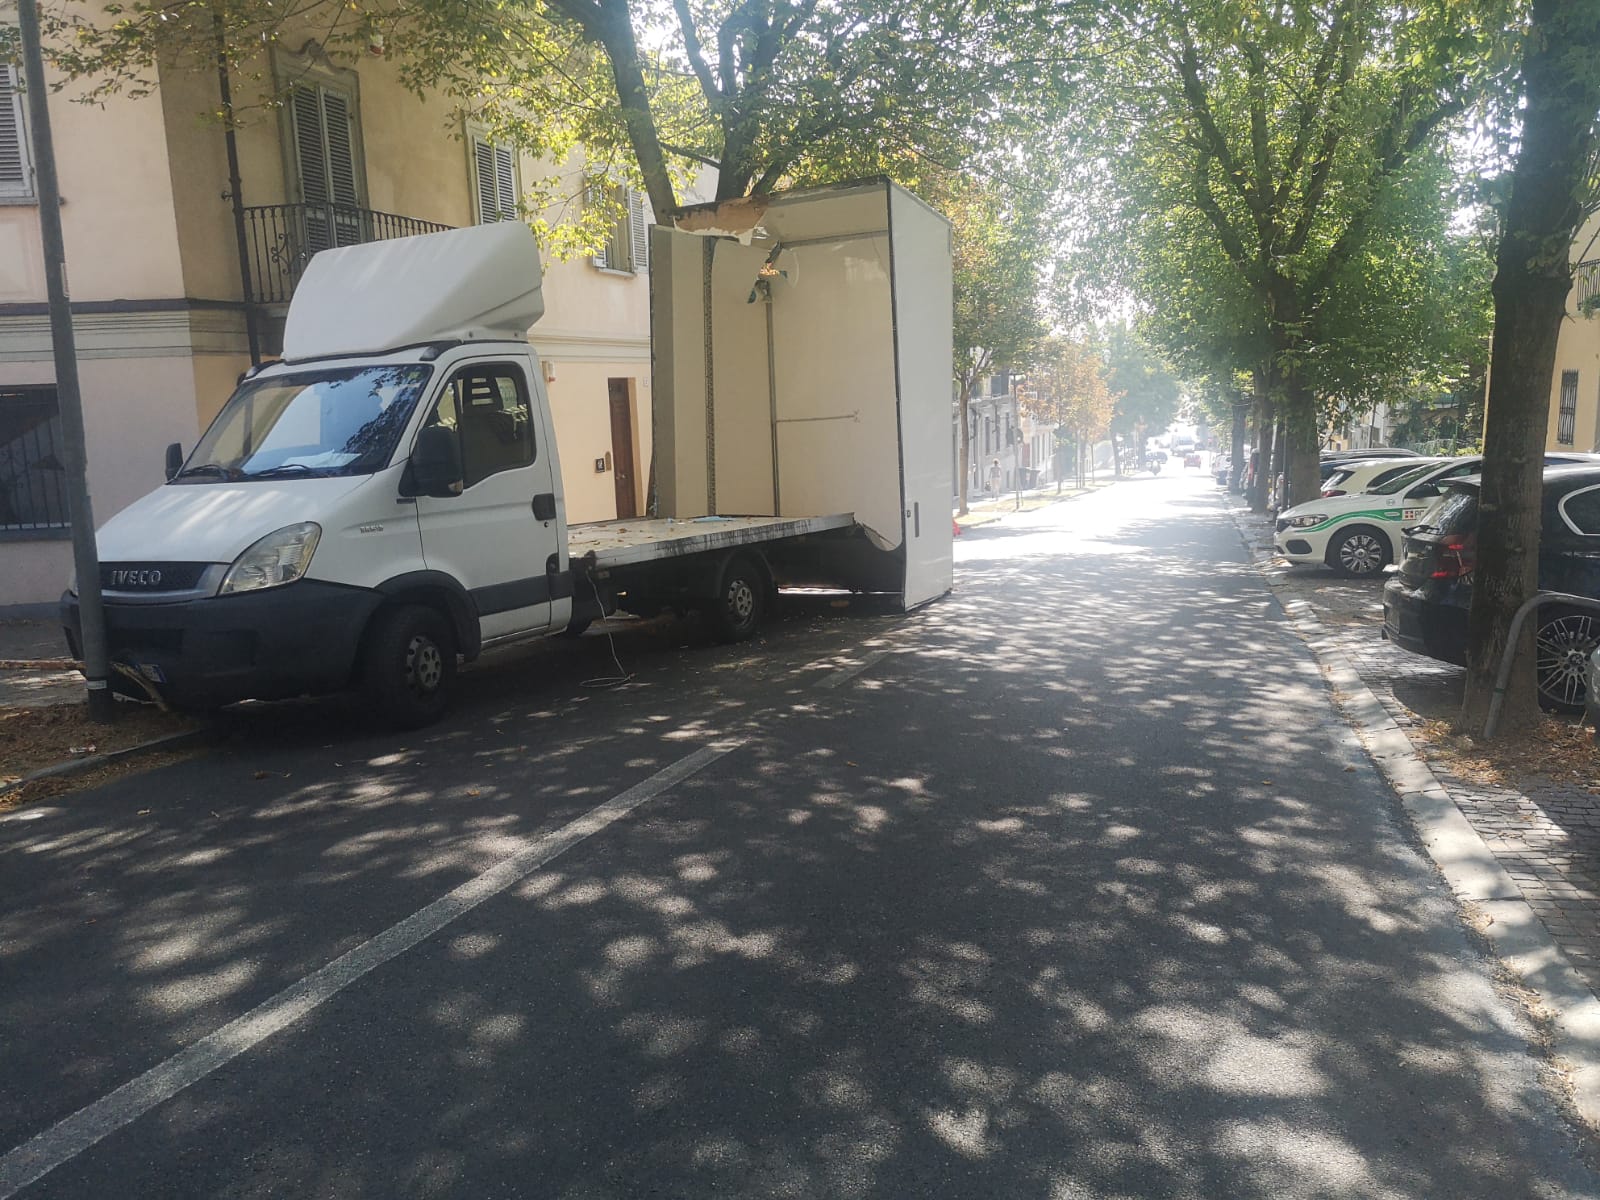 MONCALIERI – Camion si incastra sotto un albero: caos all’imbocco del centro storico